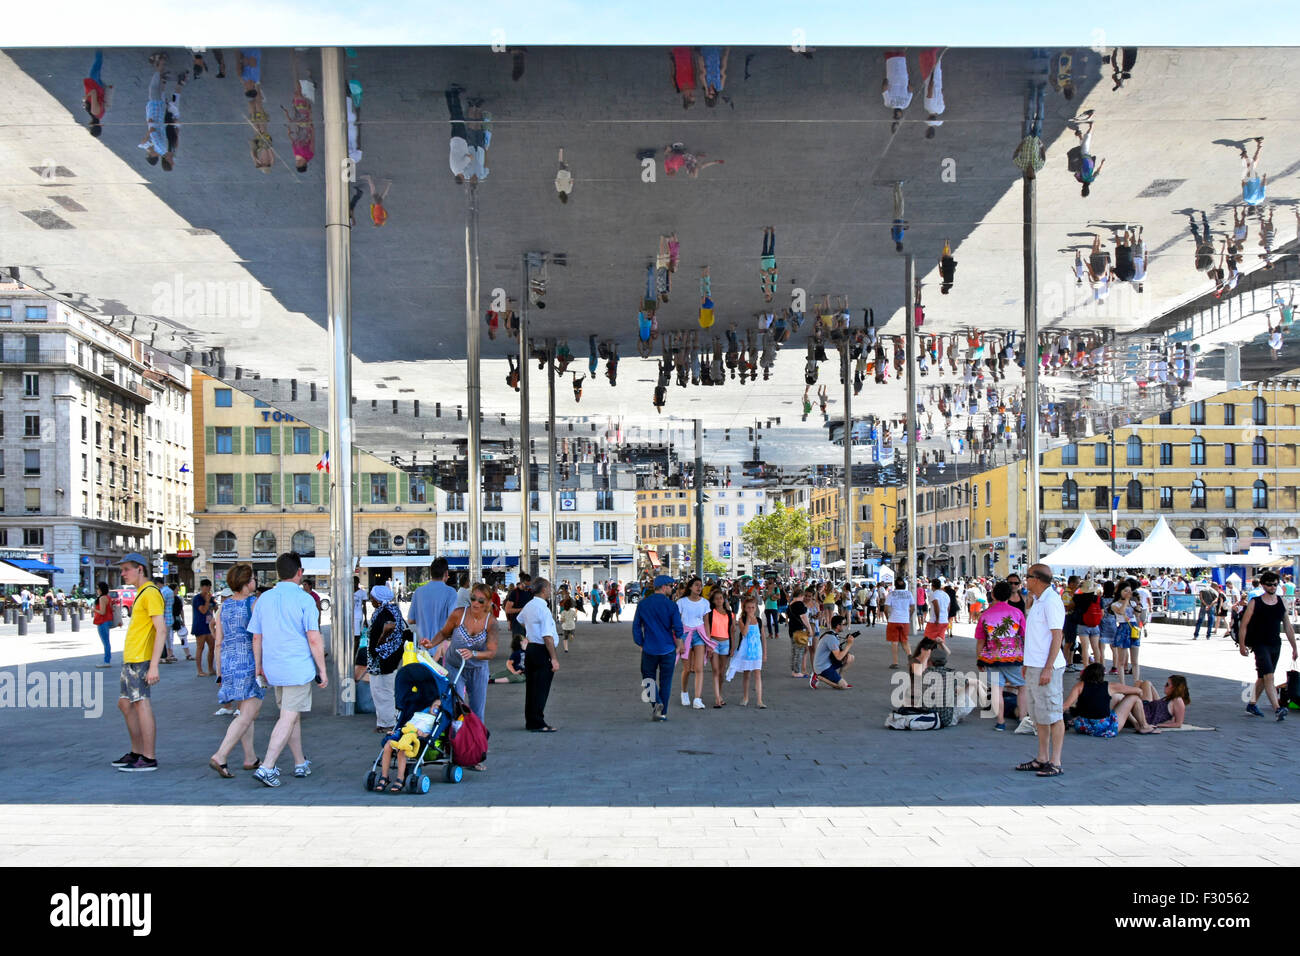 Marsiglia Francia Vieux Port Ombriere specchio immagine persone riflessioni sotto Norman promuove la tettoia nel vecchio porto di Marsiglia Provenza nel sud della Francia Foto Stock